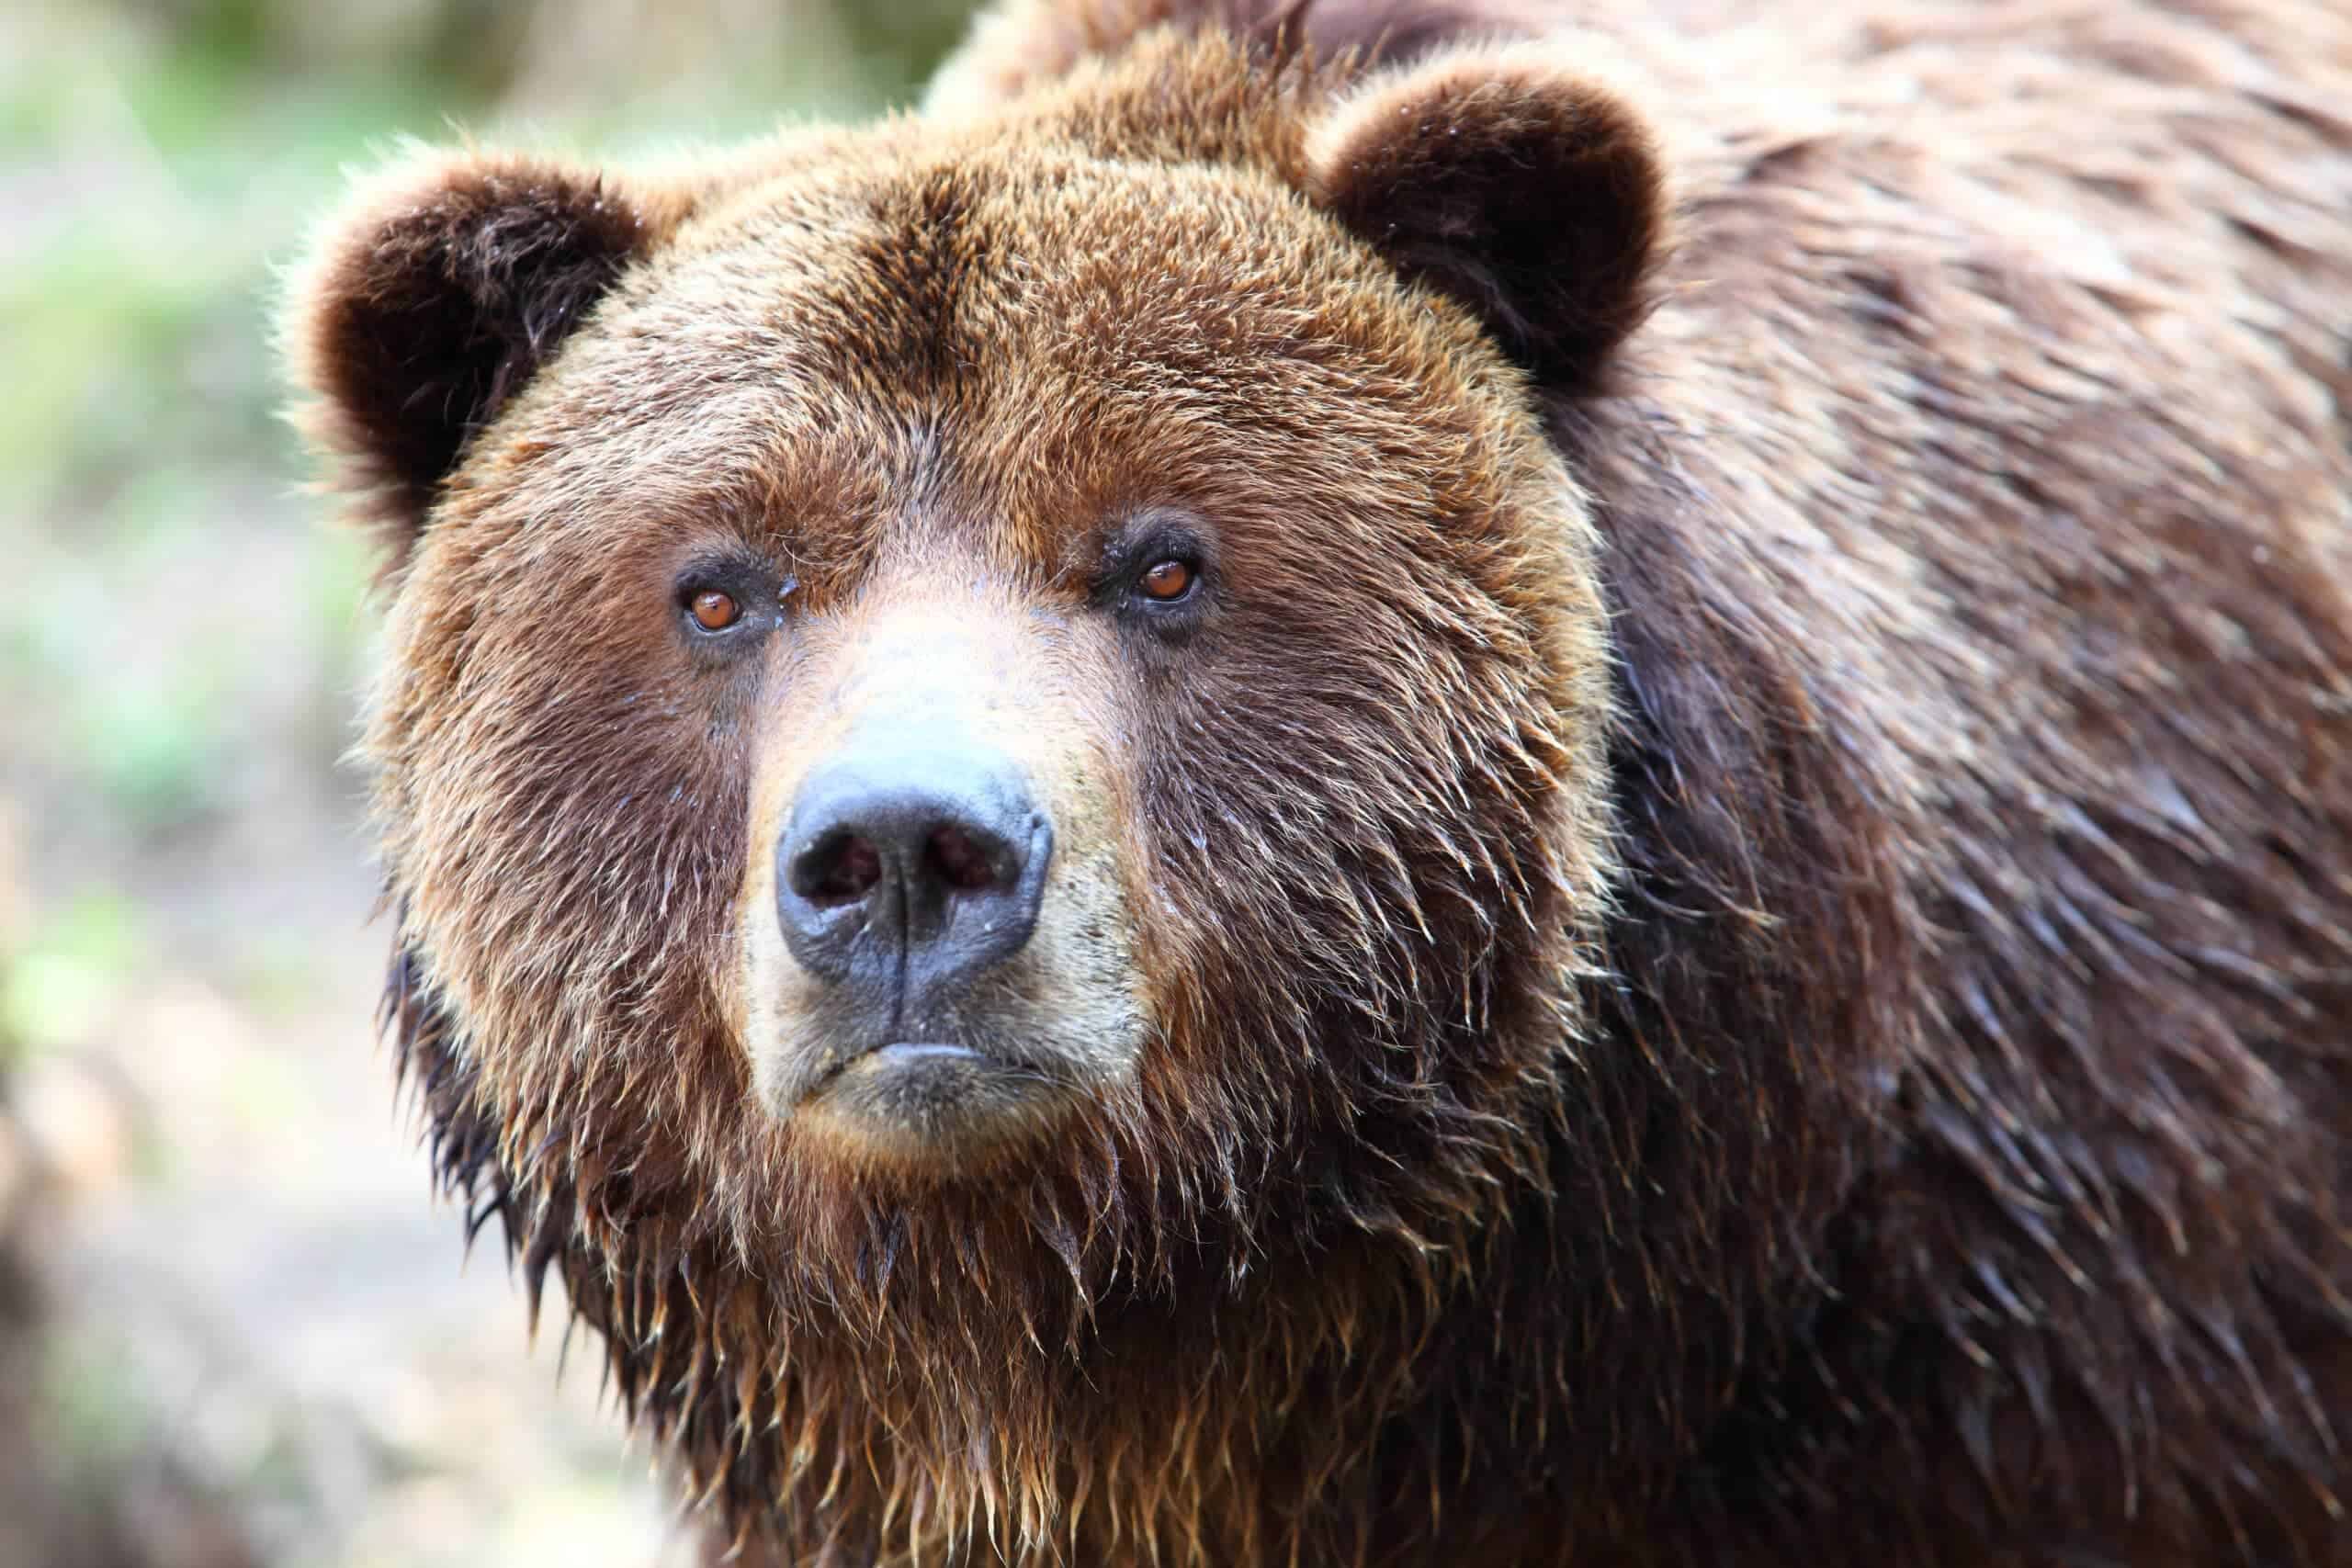 Close-up of brown bear. Image: Depositphotos.